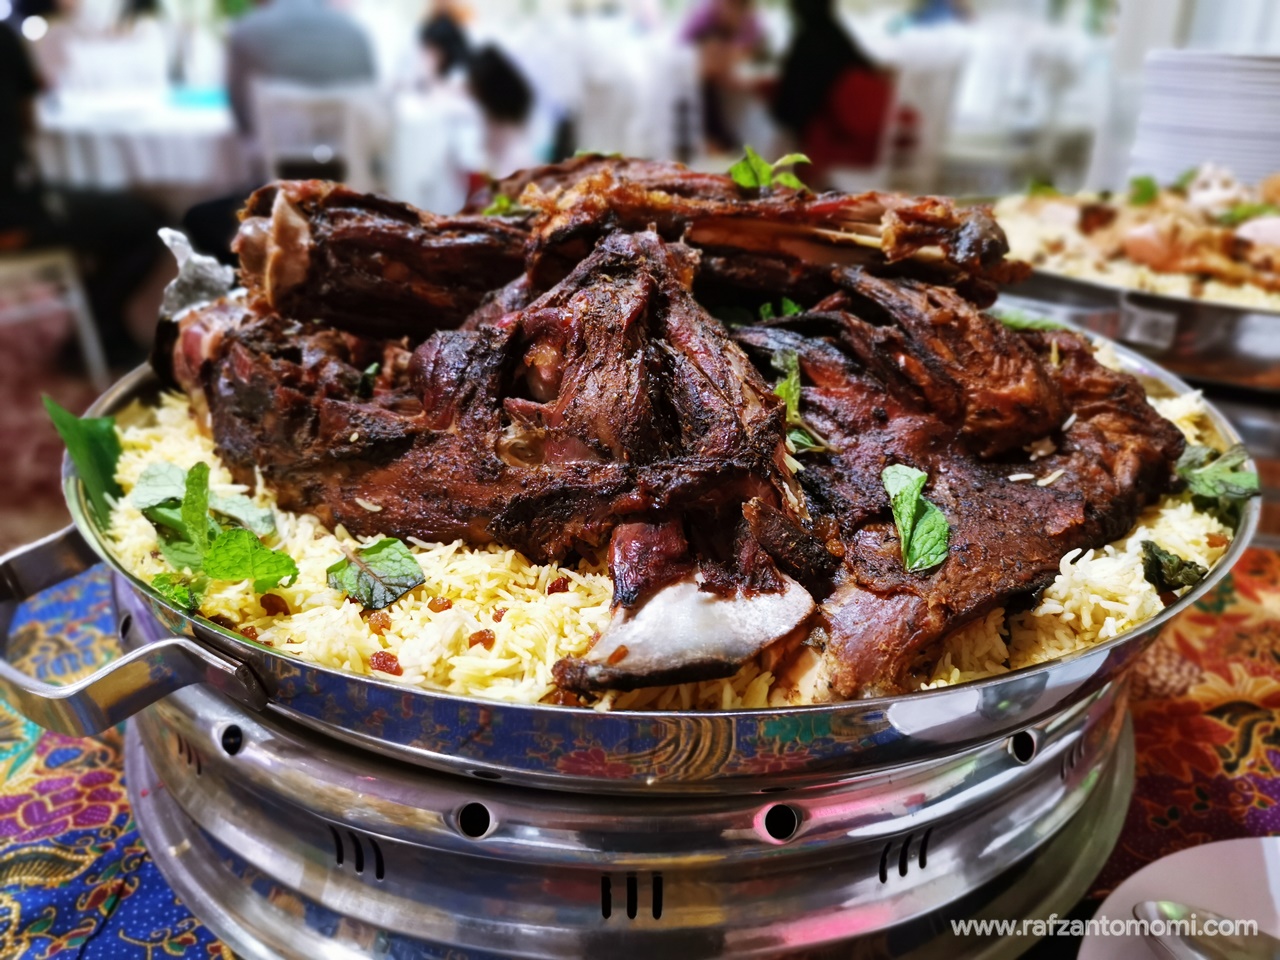 Buffet Ramadan 2019 - The Venue Shah Alam